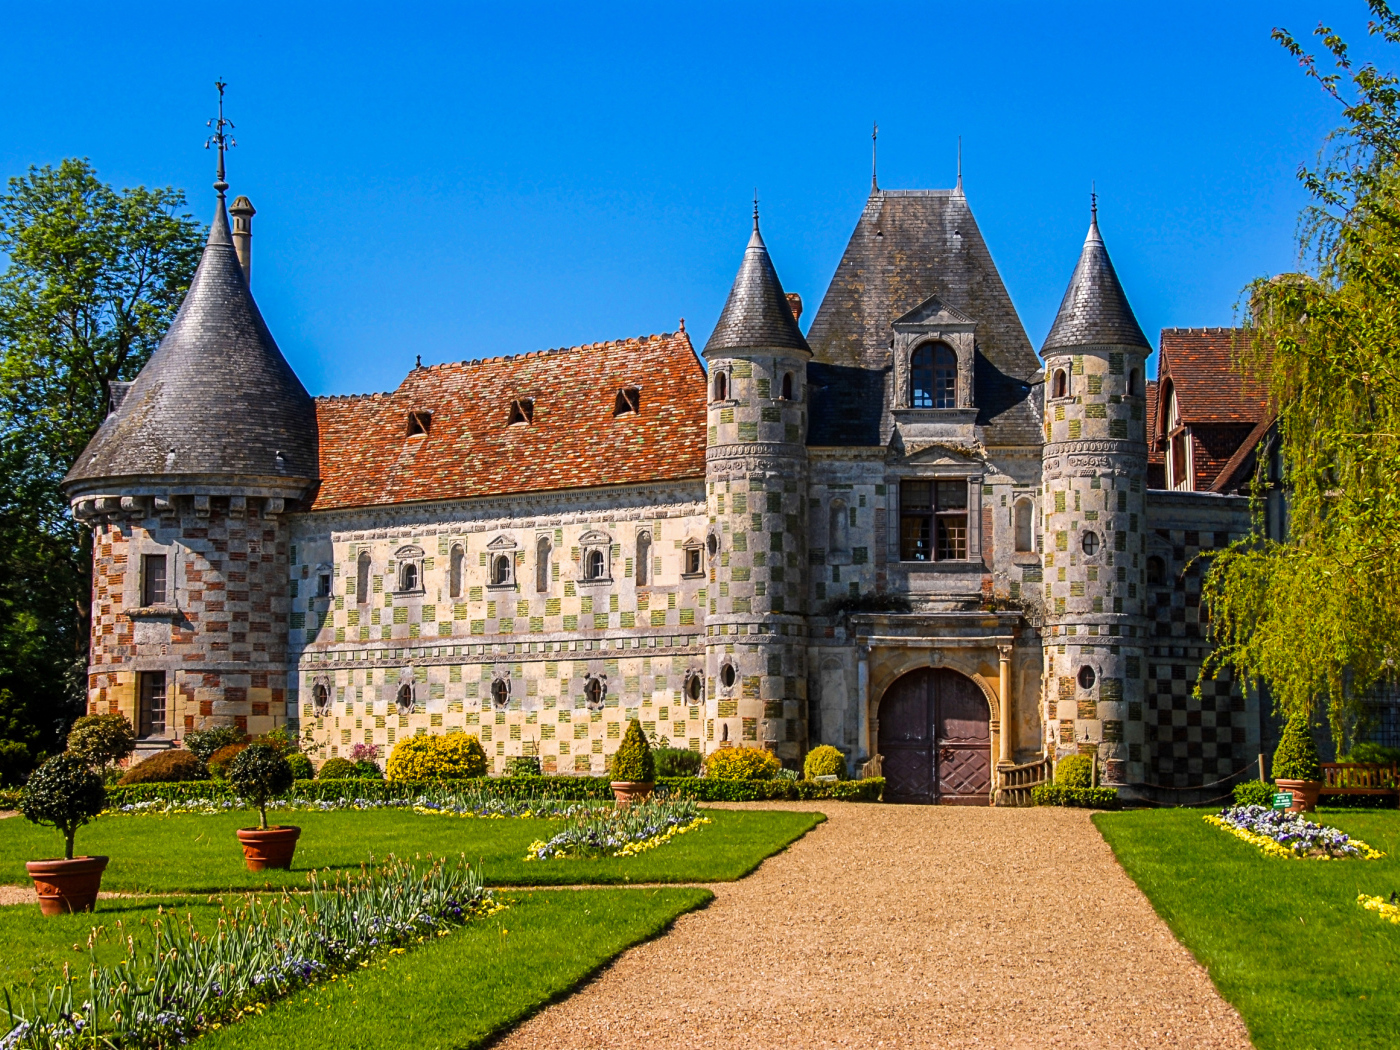 Chateau de St Germain de Livet with green lawn, France